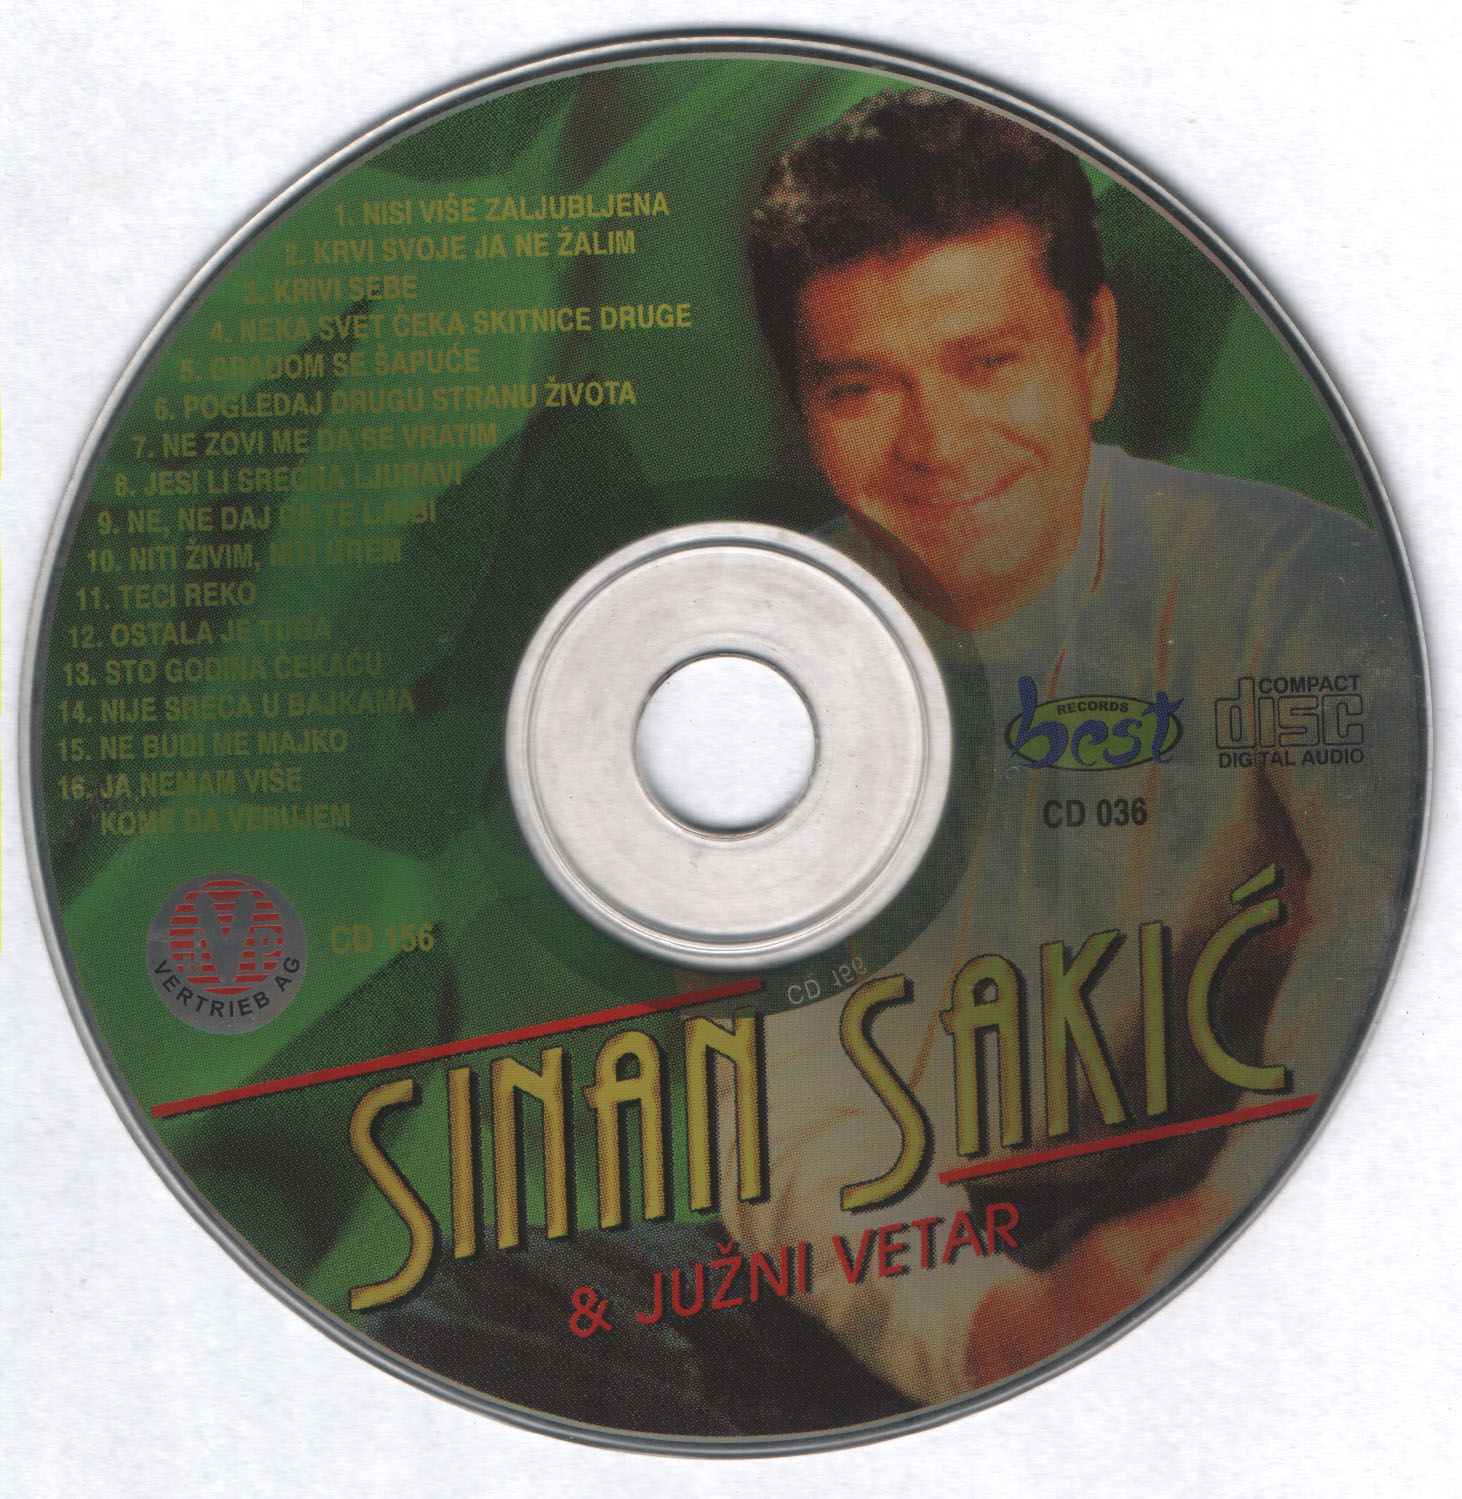 Sinan Sakic 2001 Cd